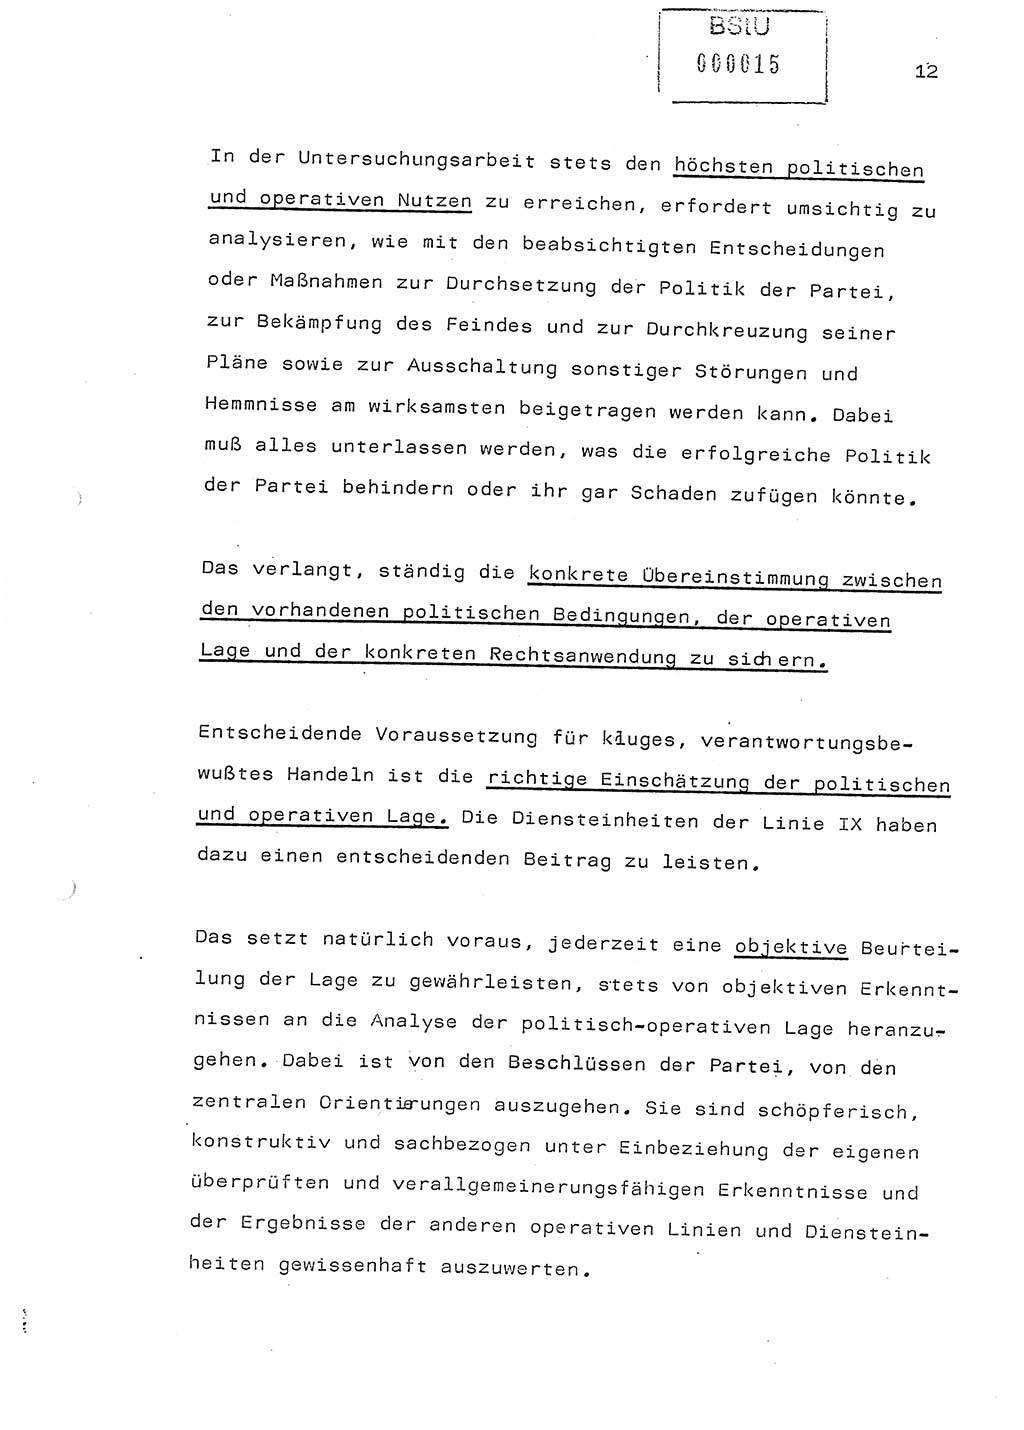 Referat (Generaloberst Erich Mielke) auf der Zentralen Dienstkonferenz am 24.5.1979 [Ministerium für Staatssicherheit (MfS), Deutsche Demokratische Republik (DDR), Der Minister], Berlin 1979, Seite 12 (Ref. DK DDR MfS Min. /79 1979, S. 12)